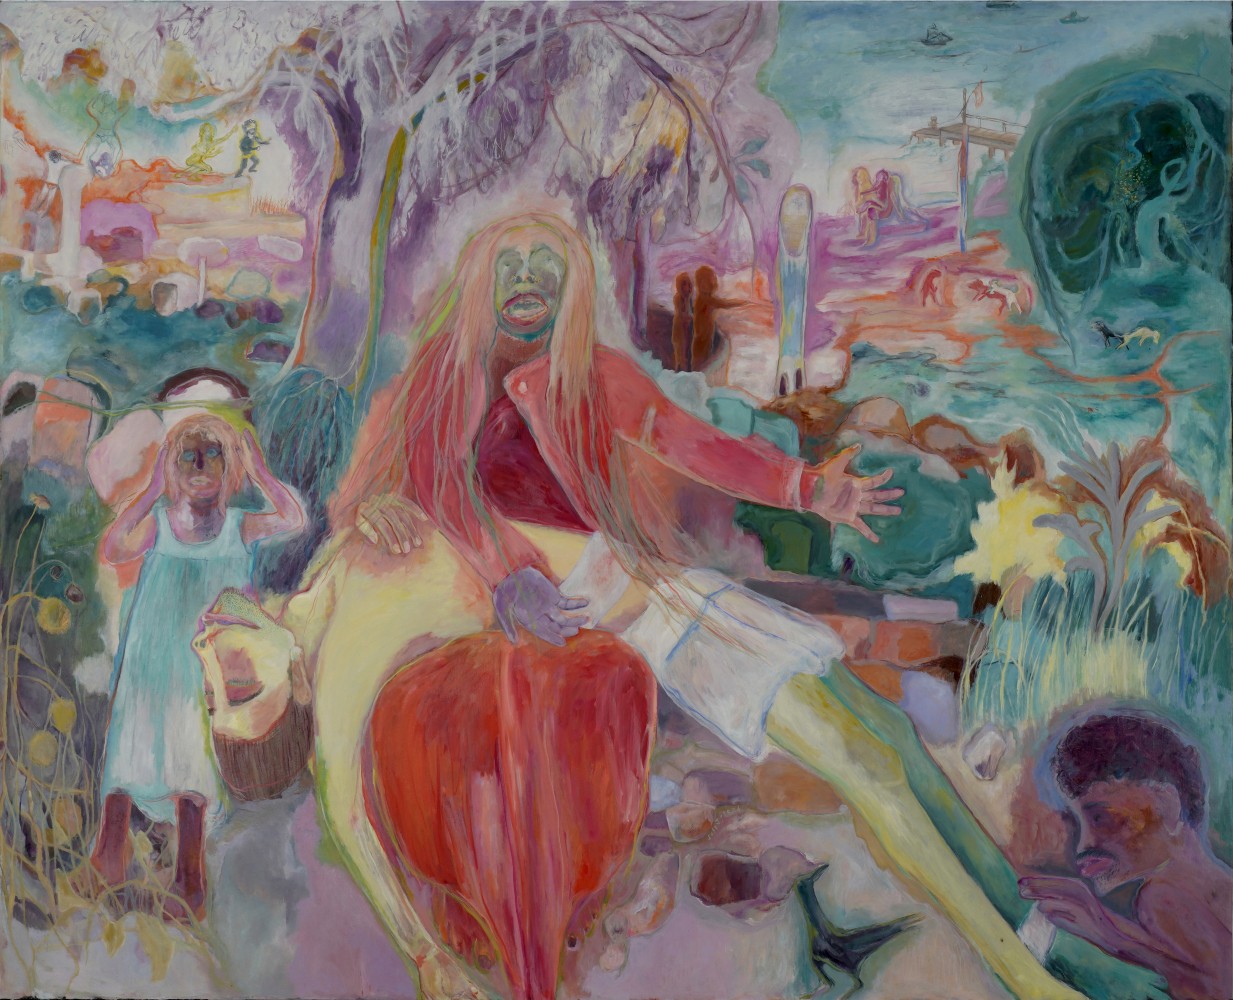 SOSA JOSEPH, Pieta, 2020, oil on canvas, 68 x 84 in / 172.7 x 213.3 cm